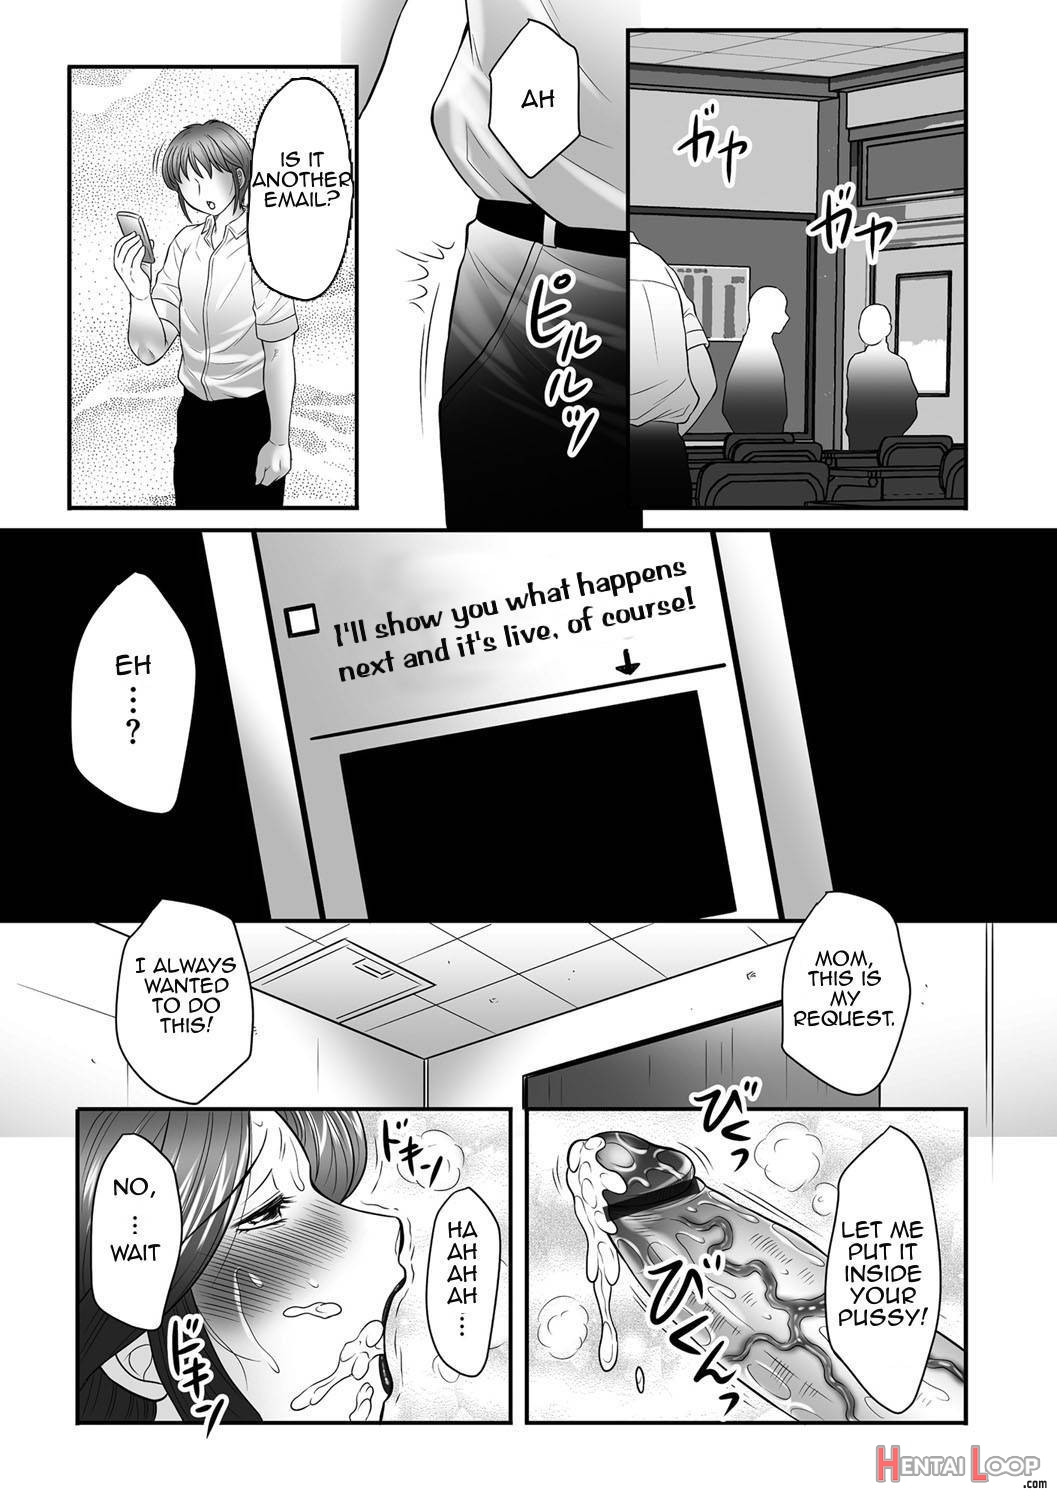 Boshi no Susume page 144